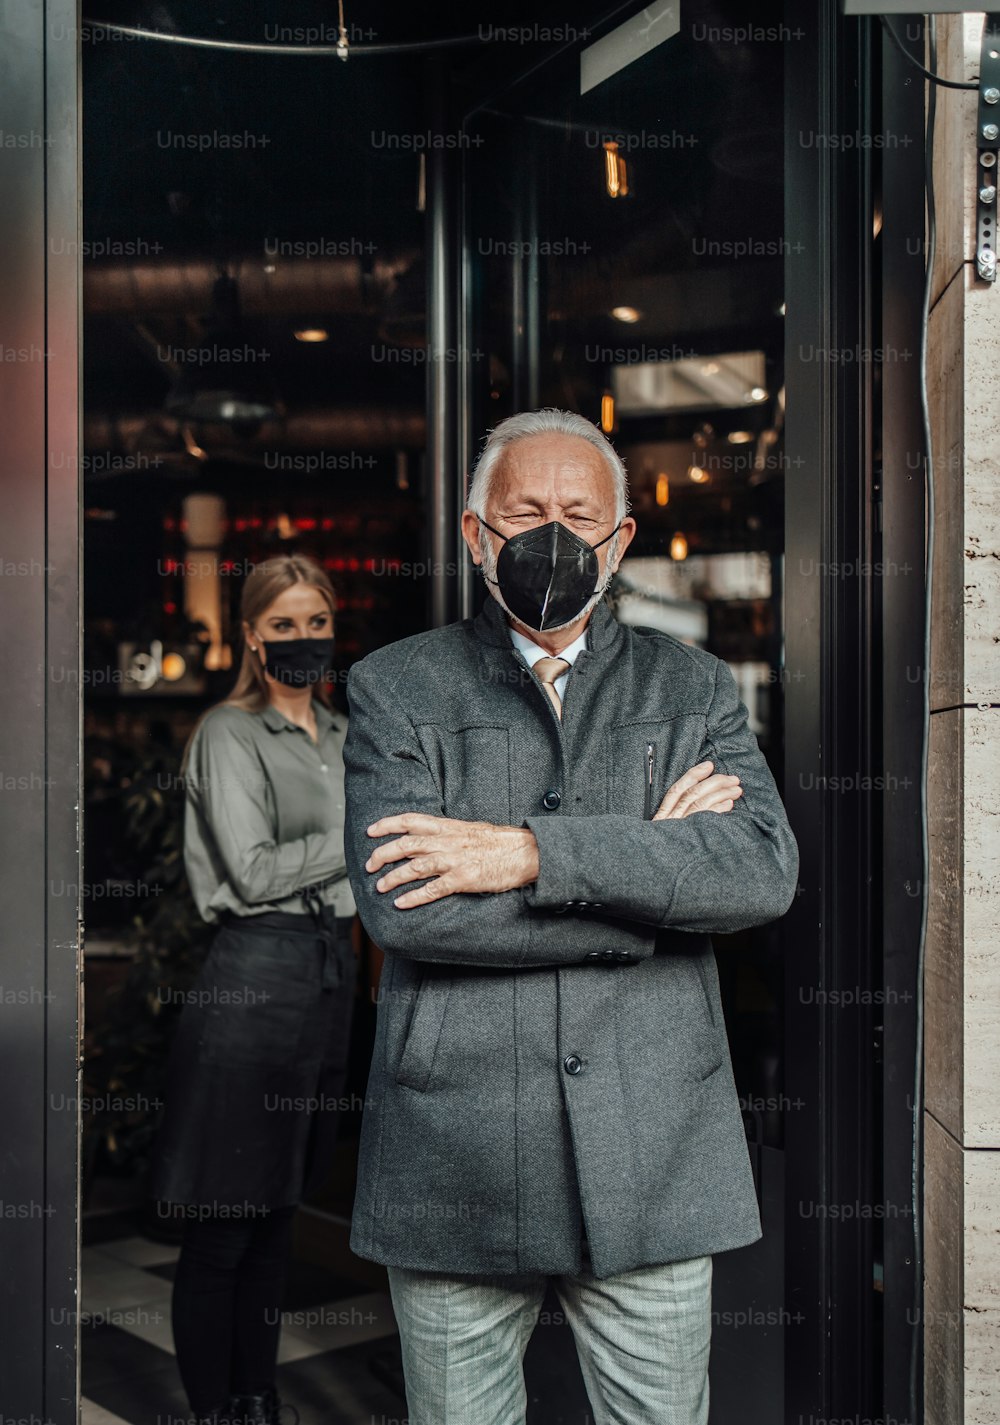 Un uomo d'affari anziano esce da un ristorante. La giovane cameriera lo saluta gentilmente. Indossano una maschera protettiva per il viso come protezione contro la pandemia di virus.